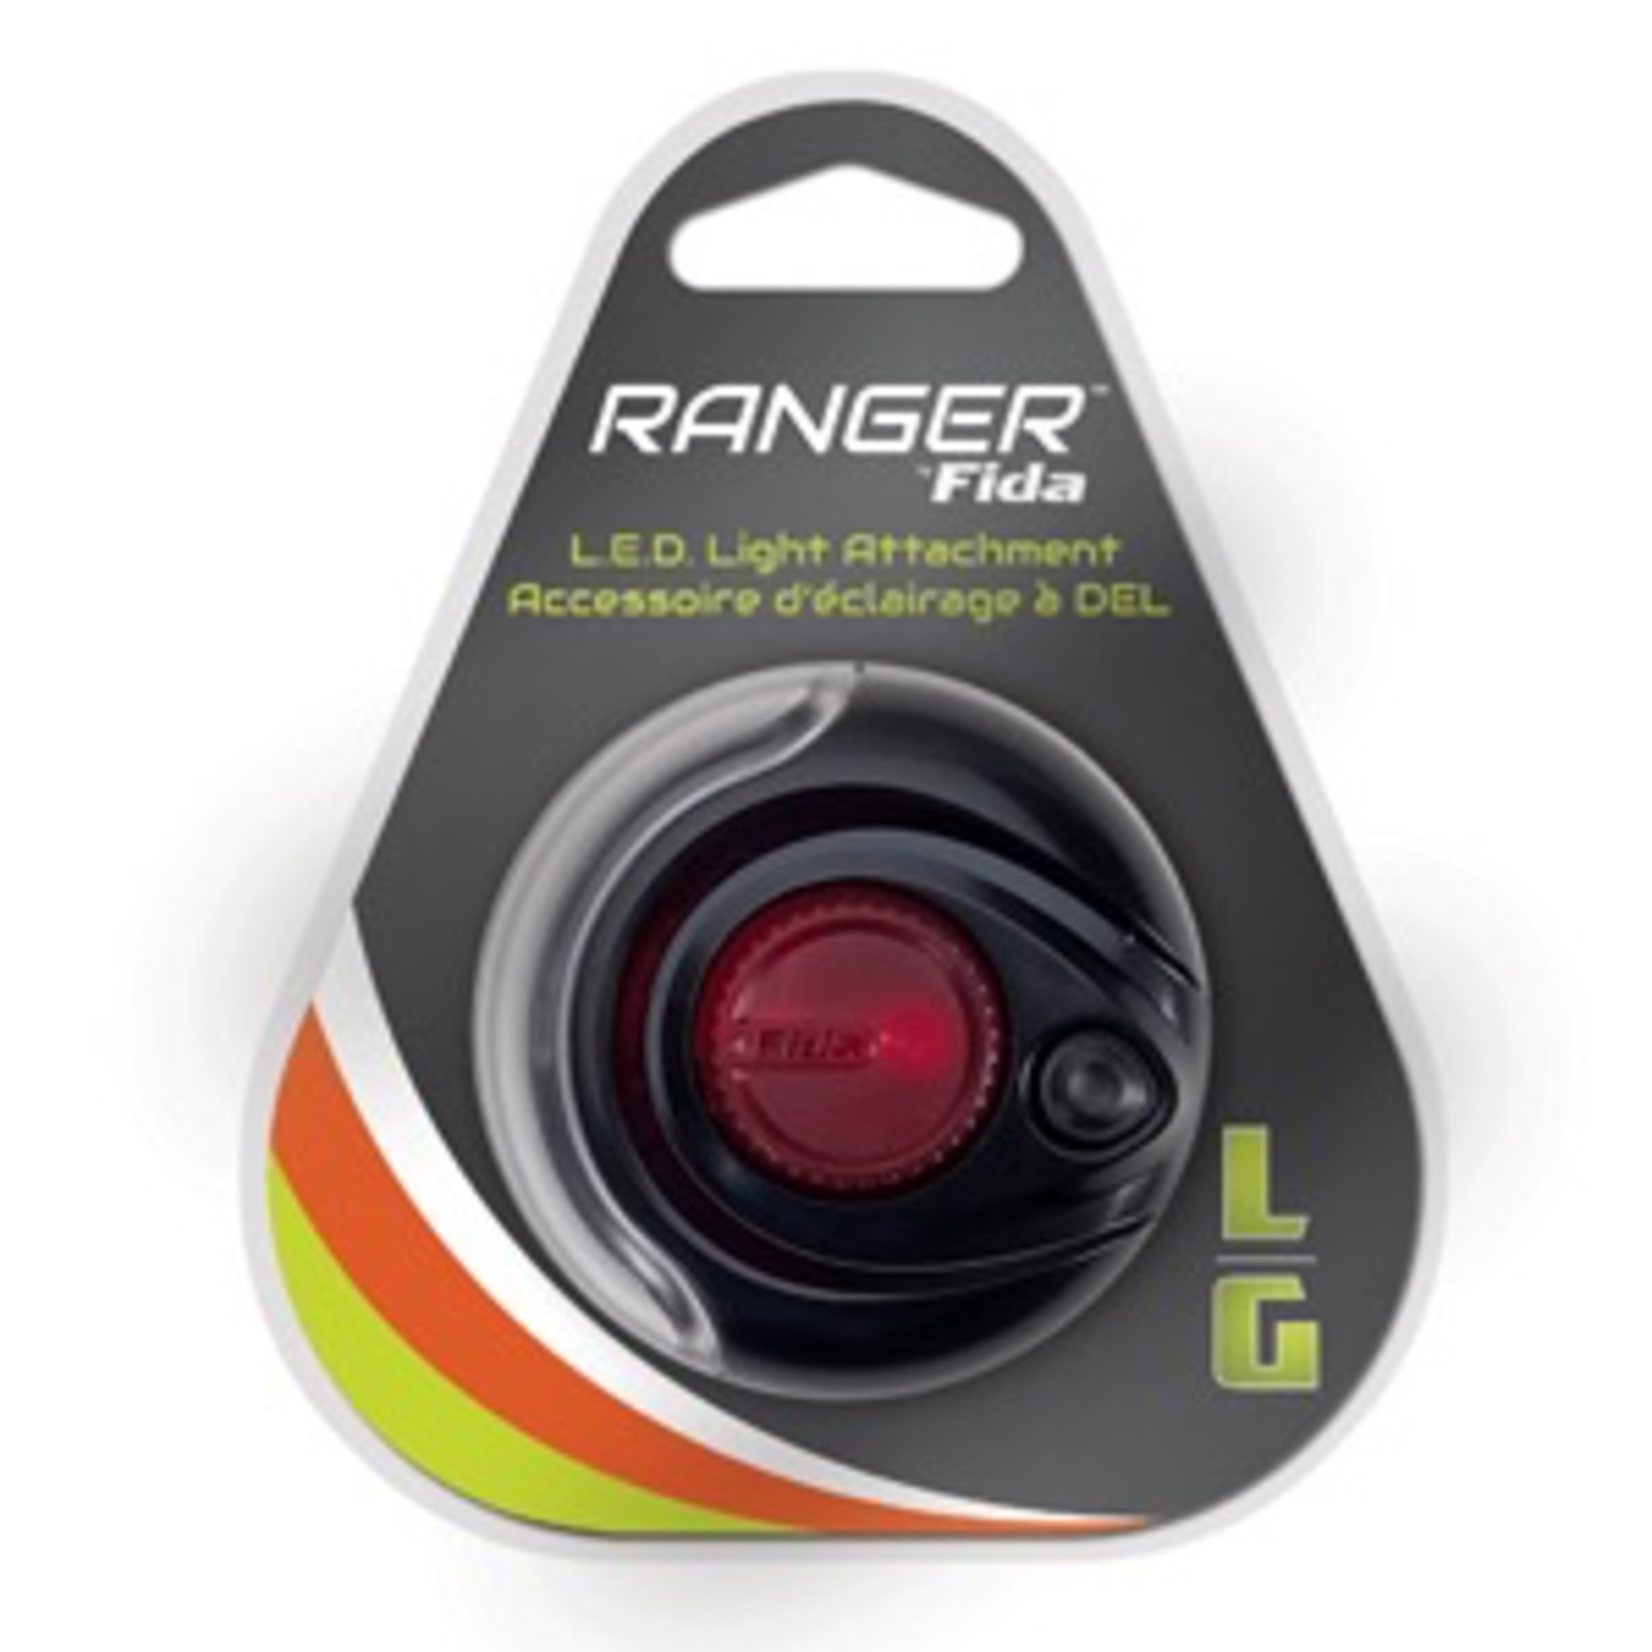 RANGER (D) Ranger by Fida LED Light - Large (fits VP2153 & VP2157)